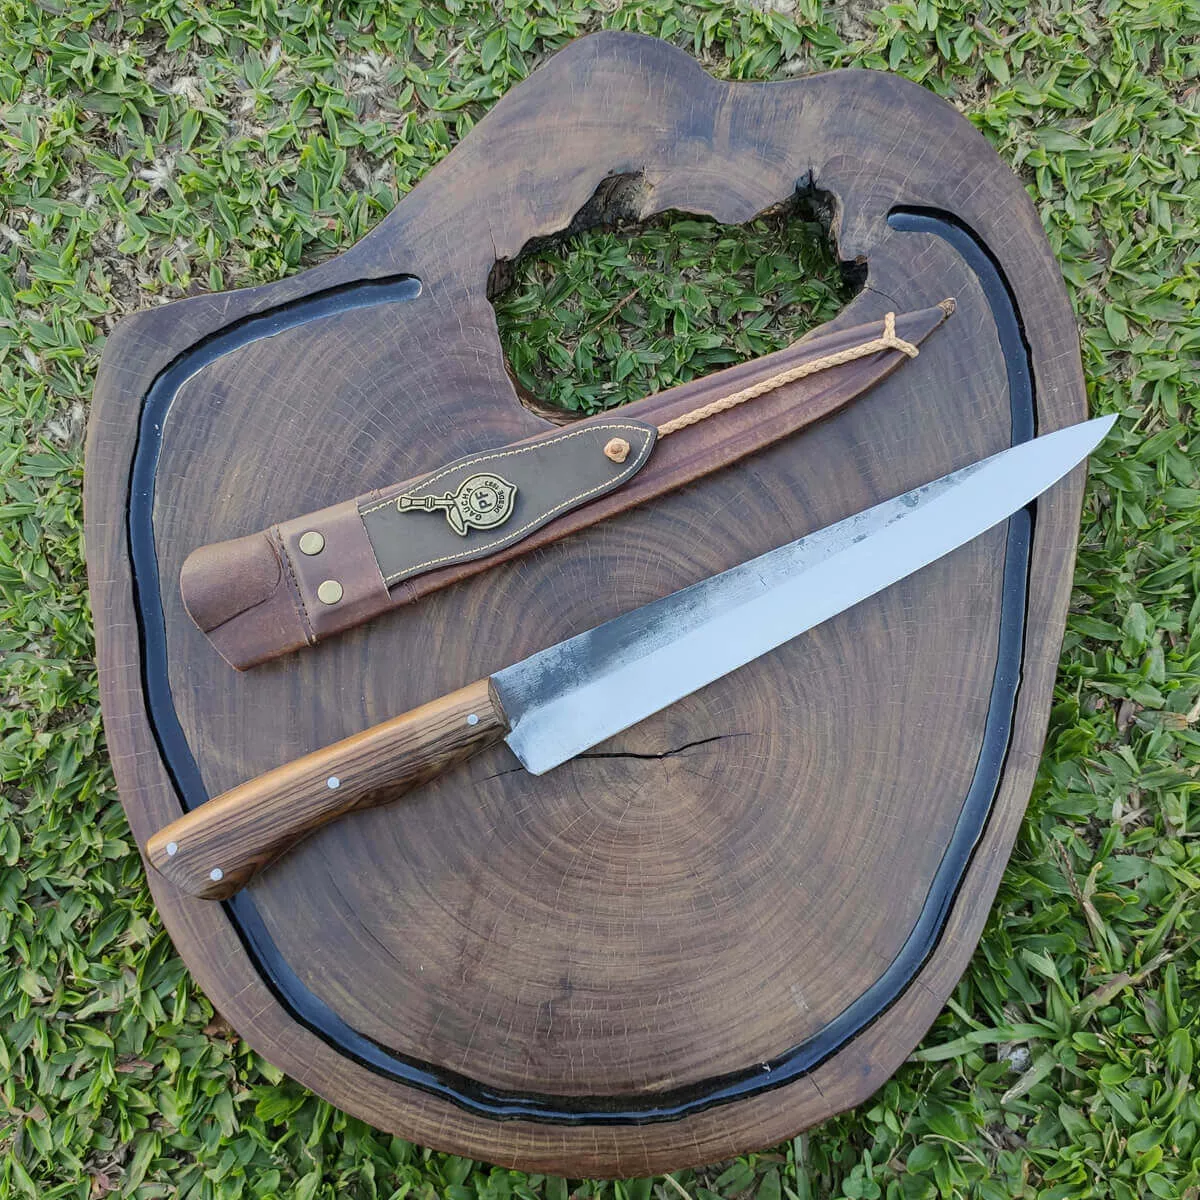 Segunda imagem para pesquisa de faca artesanal churrasco